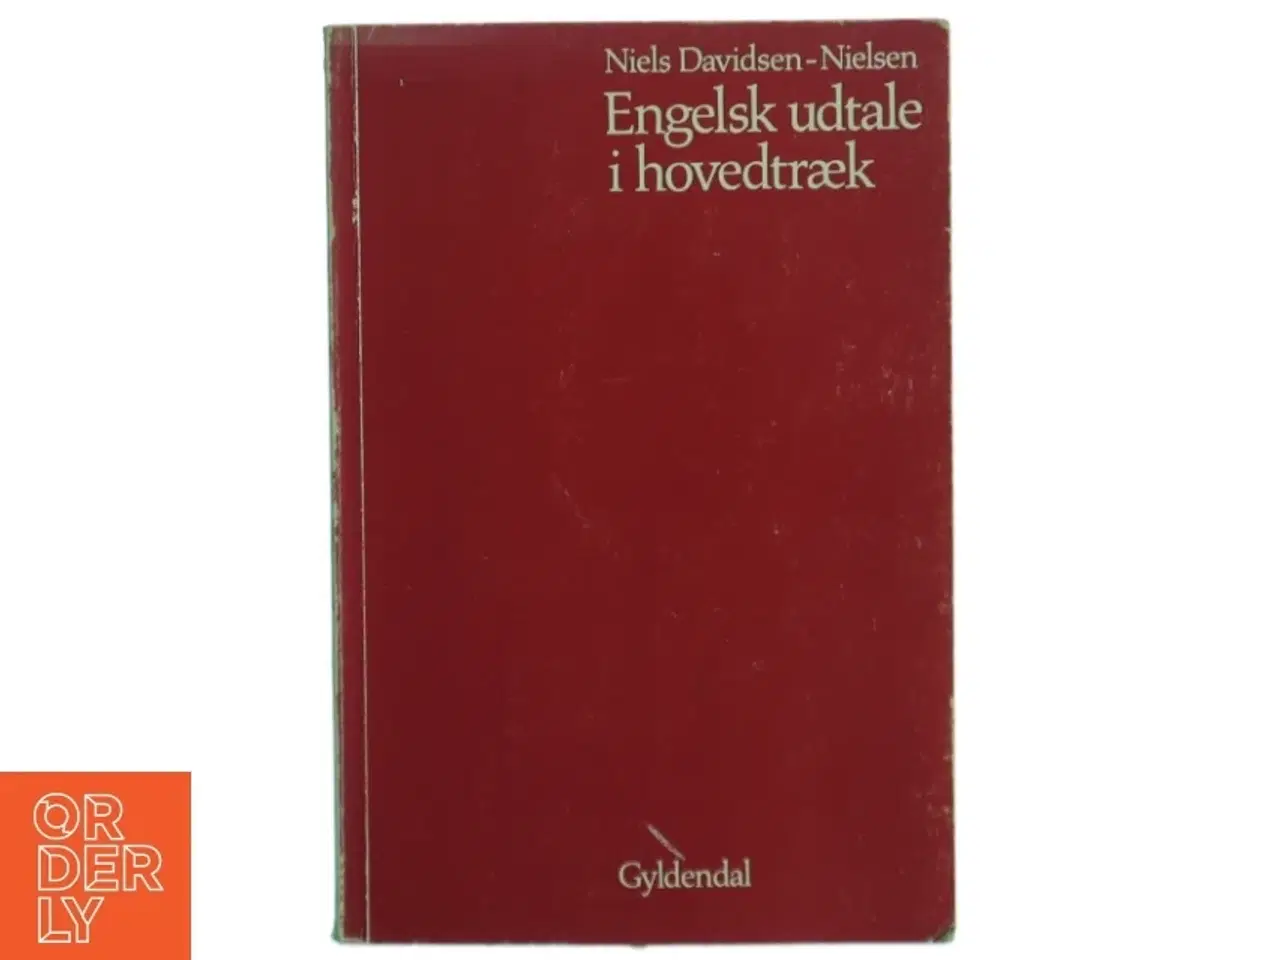 Billede 1 - Engelsk udtale i hovedtræk af Niels Davidsen-Nielsen fra Gyldendal